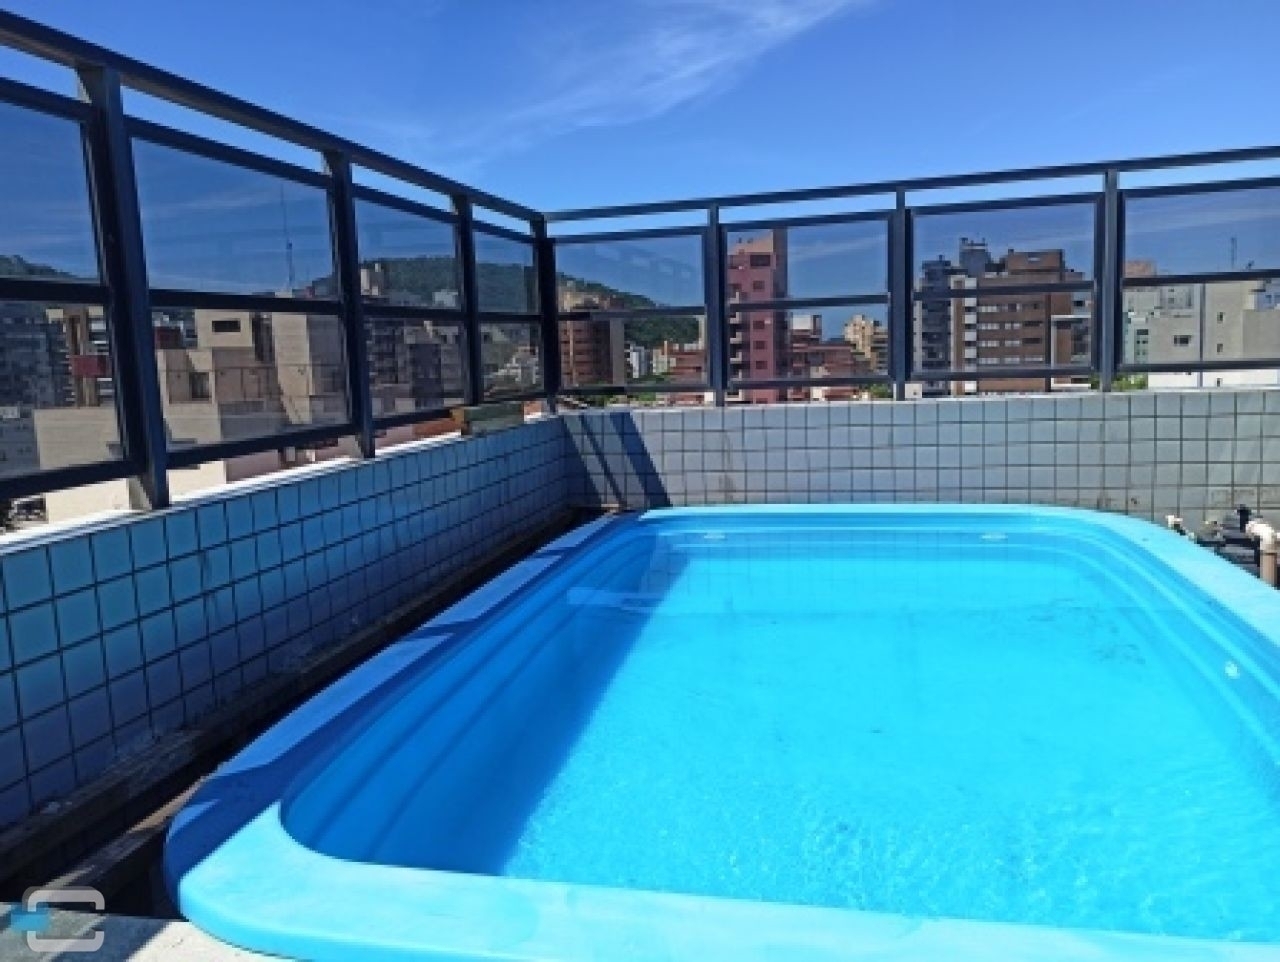 Linda cobertura duplex com piscina exclusiva - Guaratuba